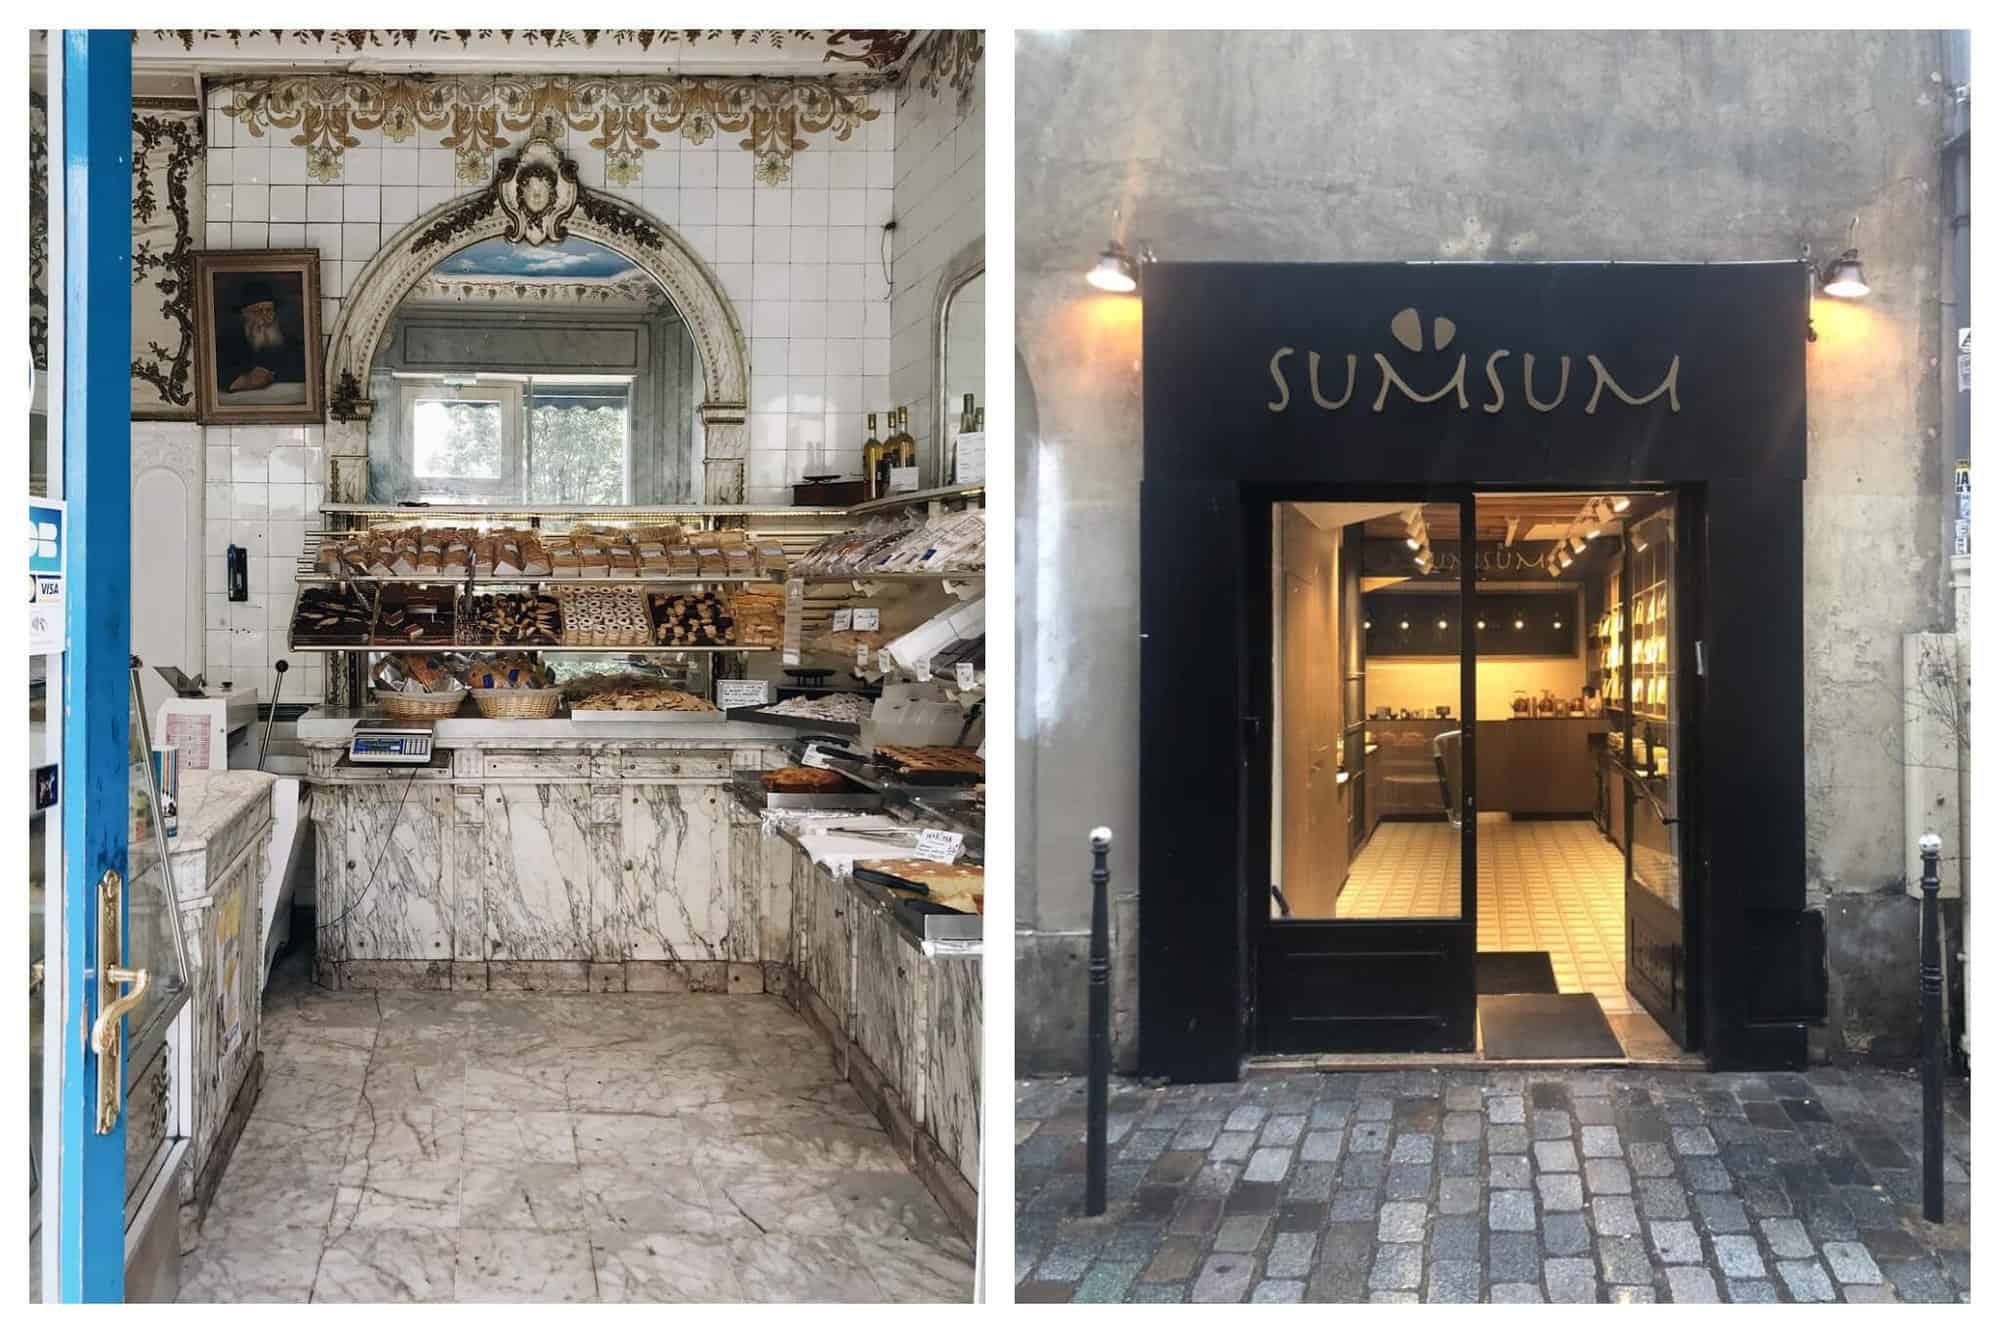 Left: The interior of Boulangerie Murciano in Paris. Right: The exterior of SumSum in Paris.